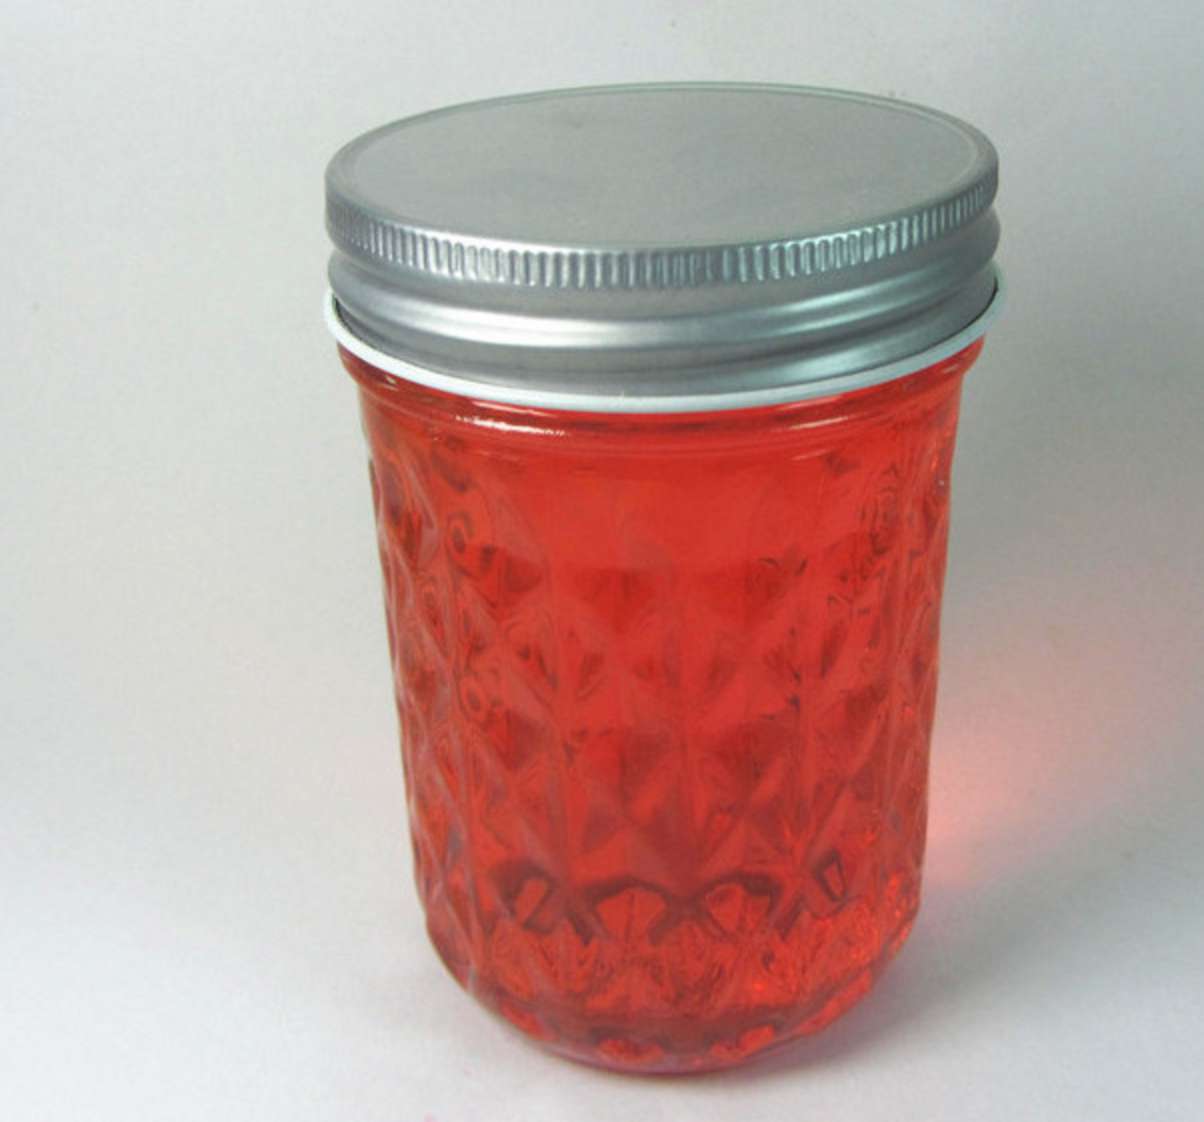 8oz ball glass mason jar with metal lid